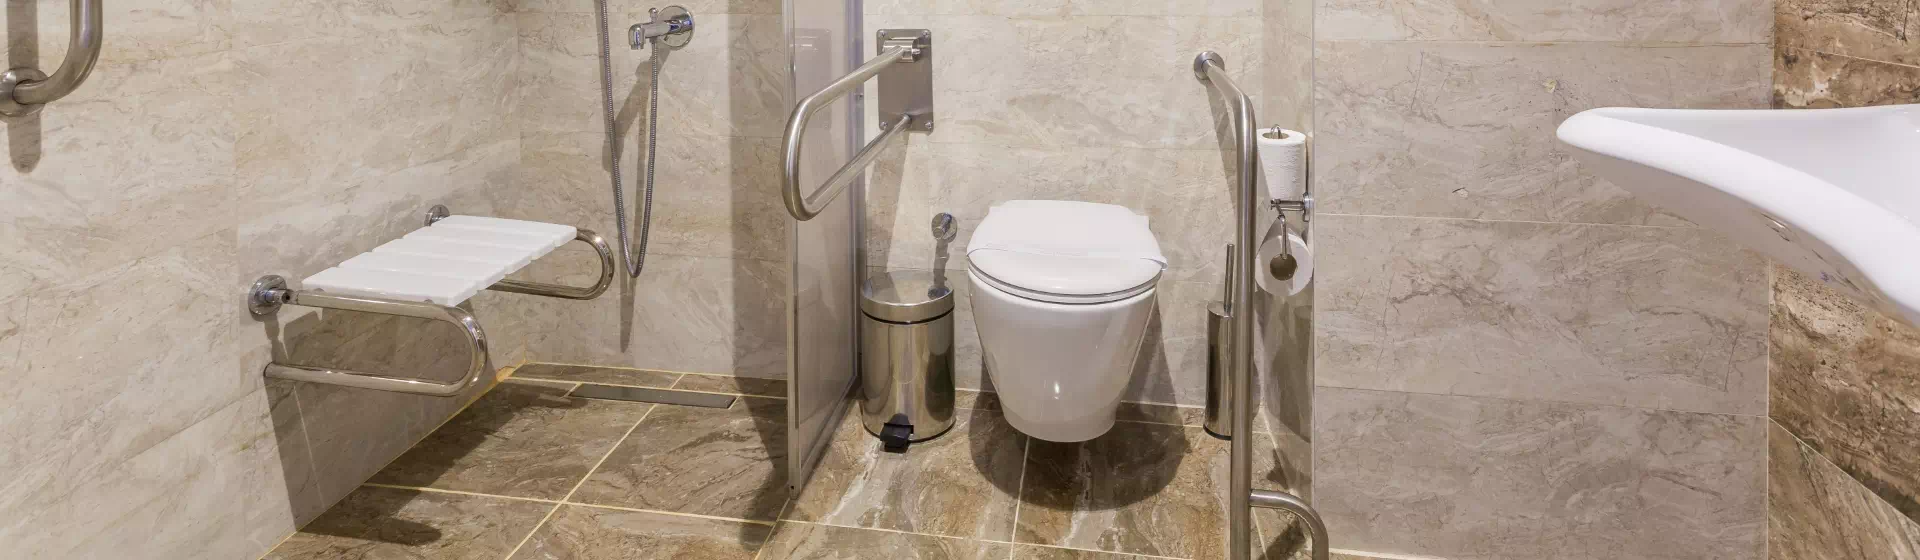 brązowa łazienka dla niepełnosprawnych